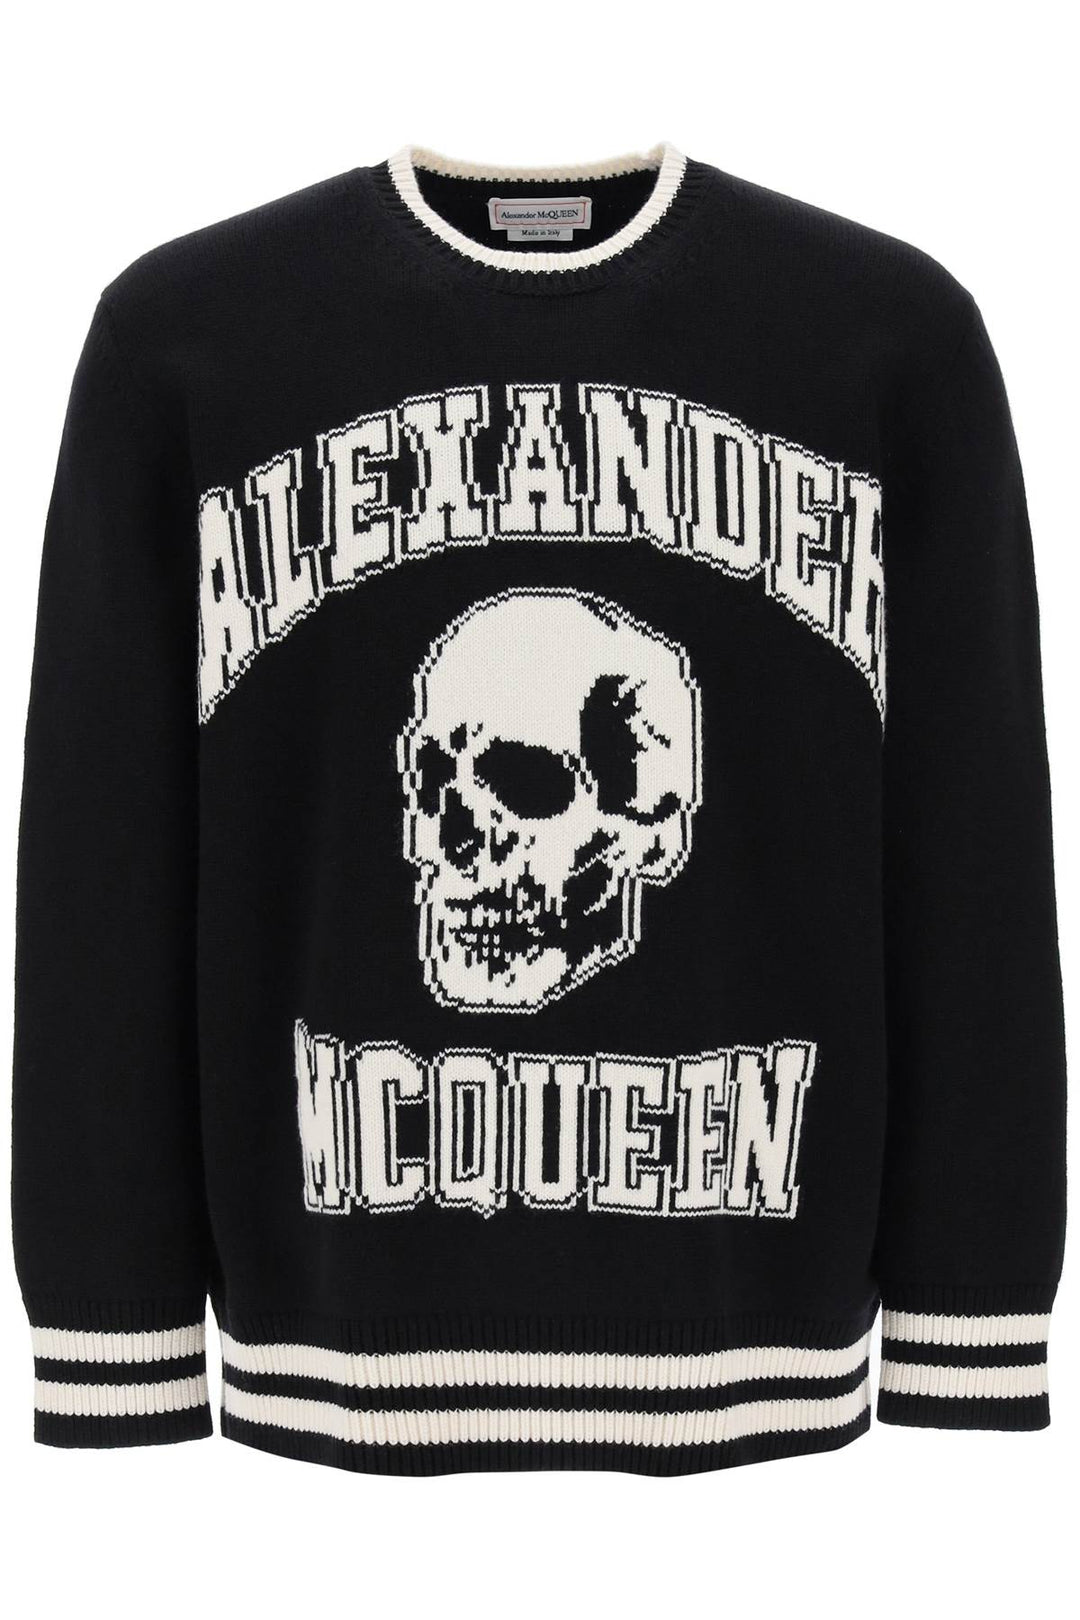 Alexander mcqueen varsity sweater with skull motif-0